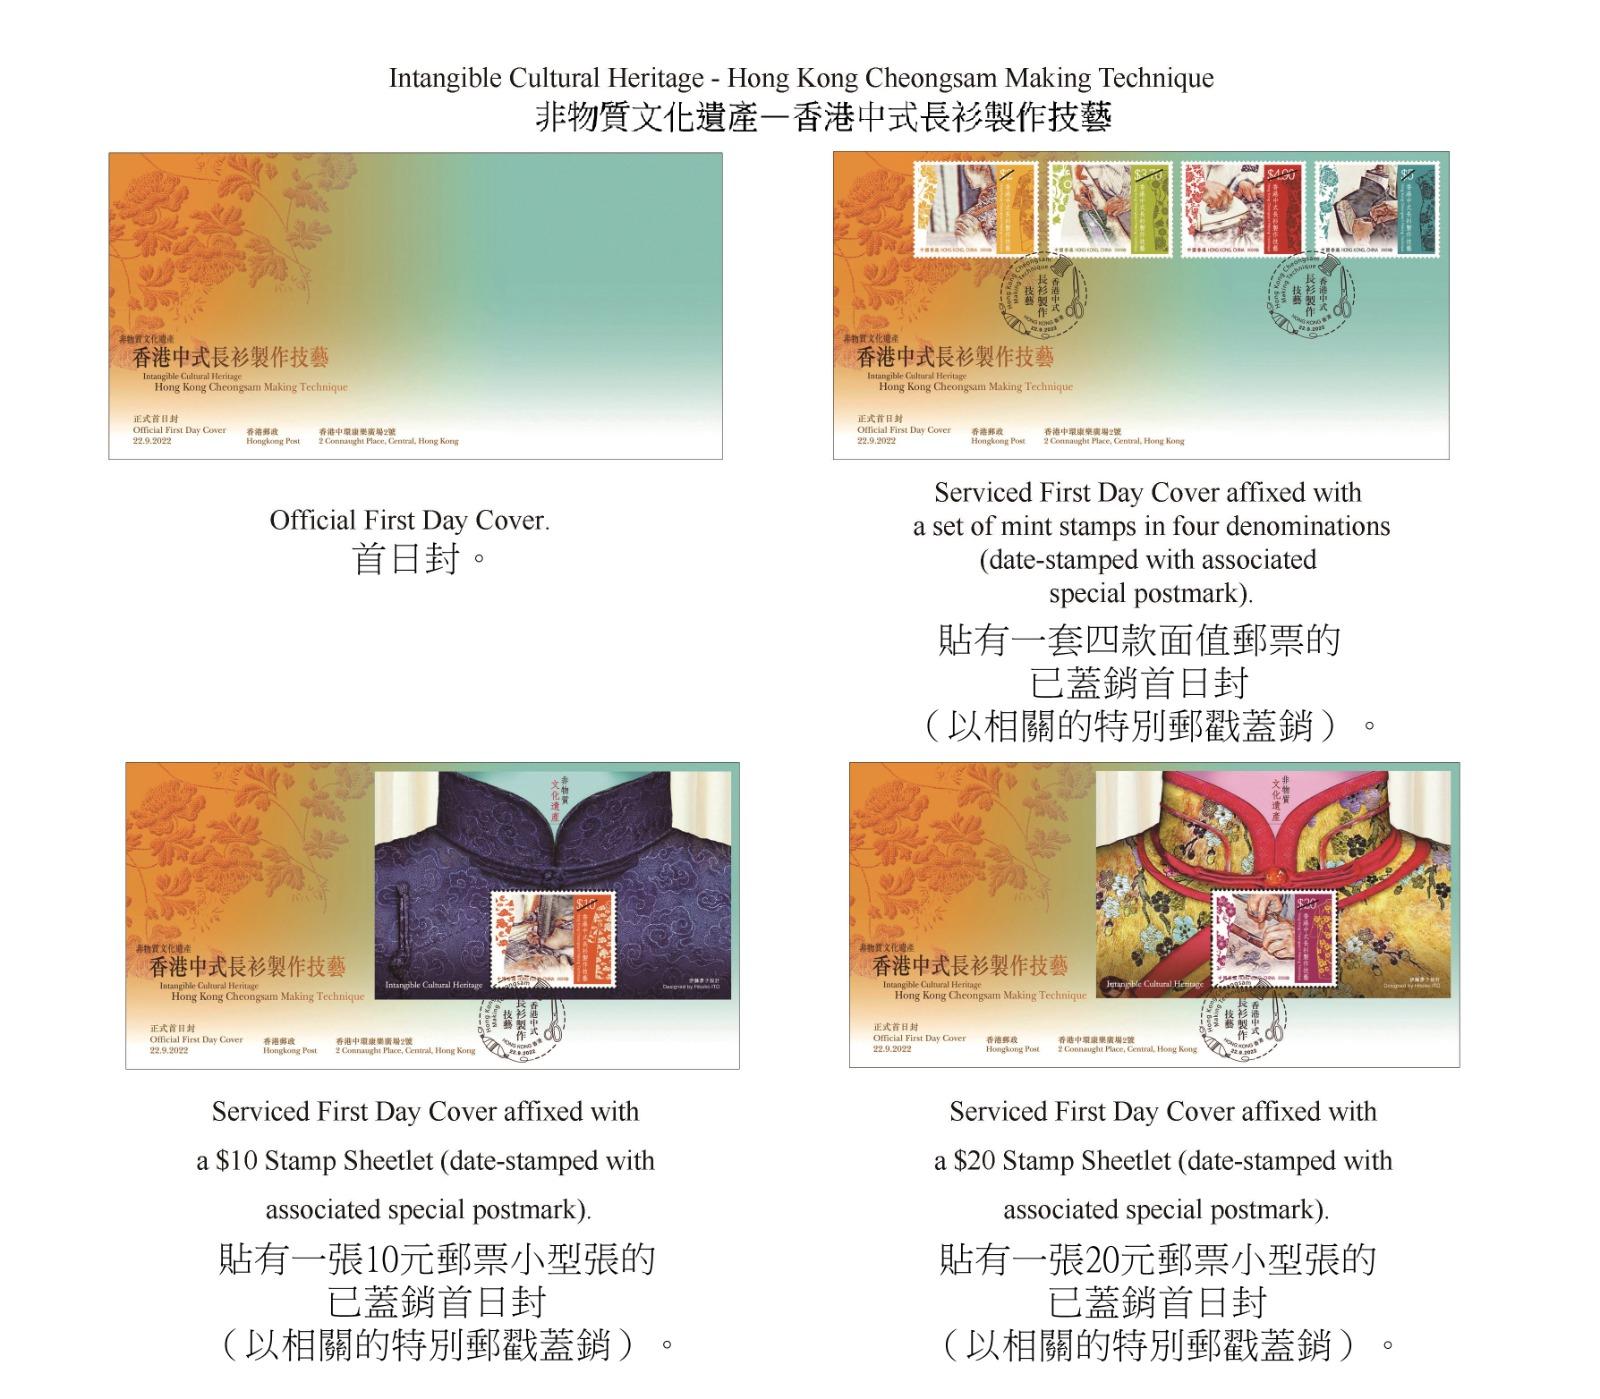 香港郵政九月二十二日（星期四）發行以「非物質文化遺產──香港中式長衫製作技藝」為題的特別郵票及相關集郵品。圖示首日封。